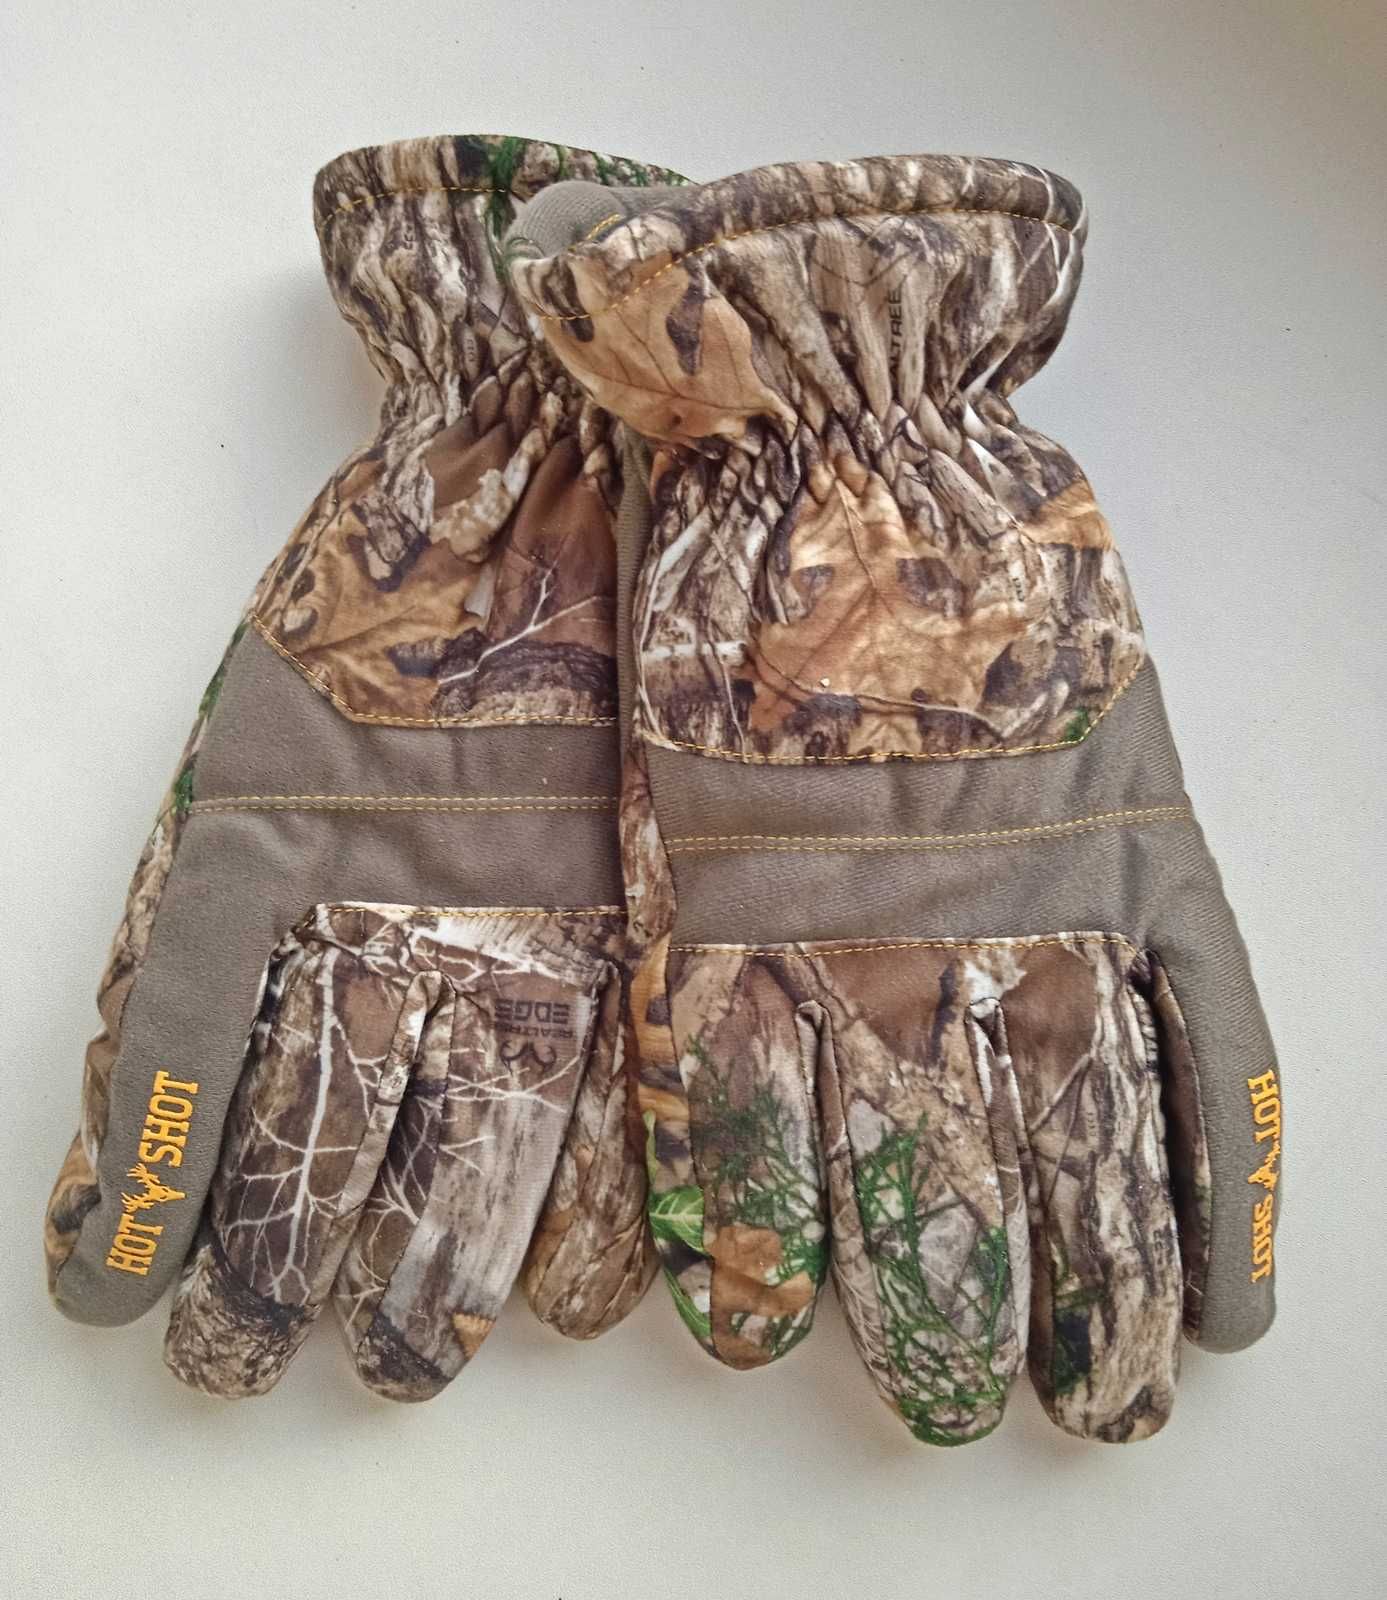 Зимові мисливські рукавички, охотничьи перчатки Hot Shot. З США